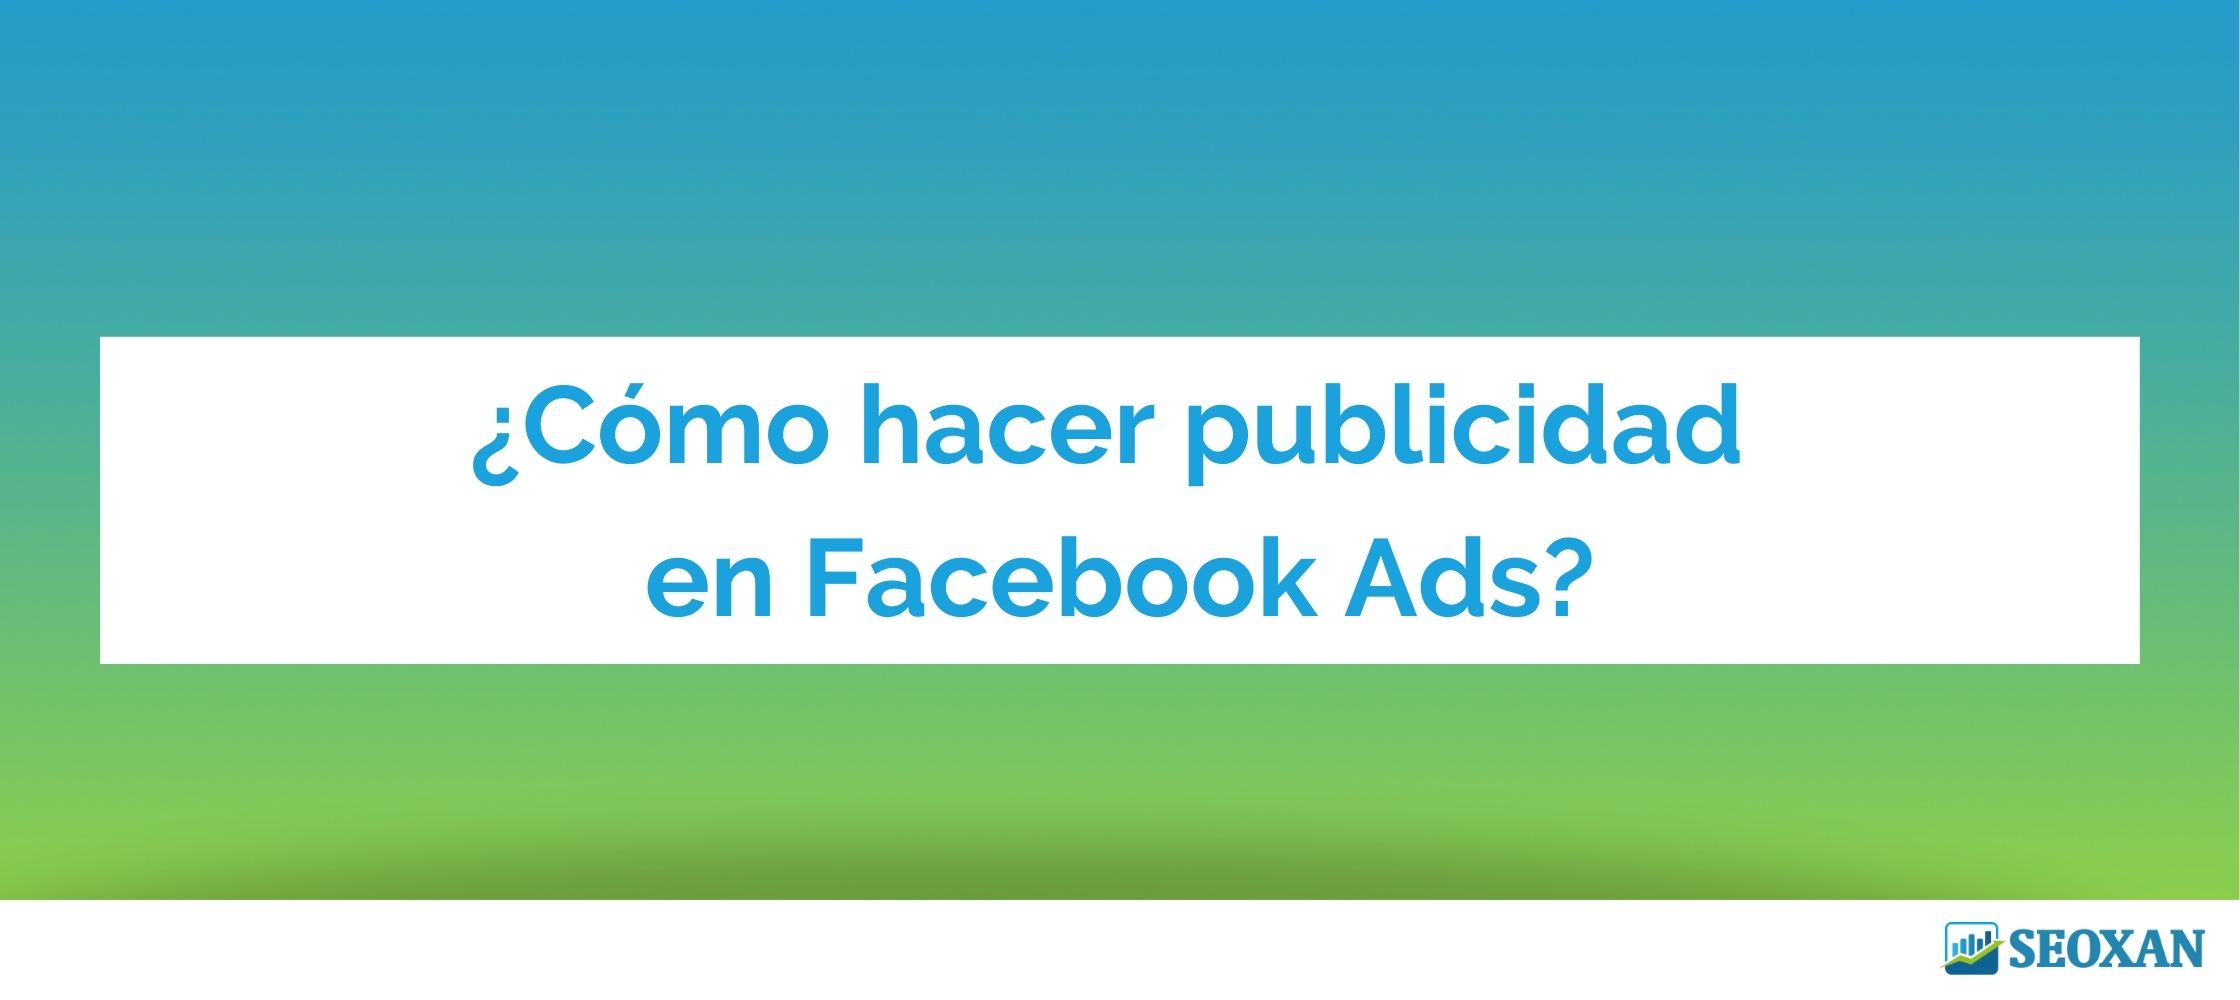 ¿Cómo hacer publicidad en Facebook Ads?